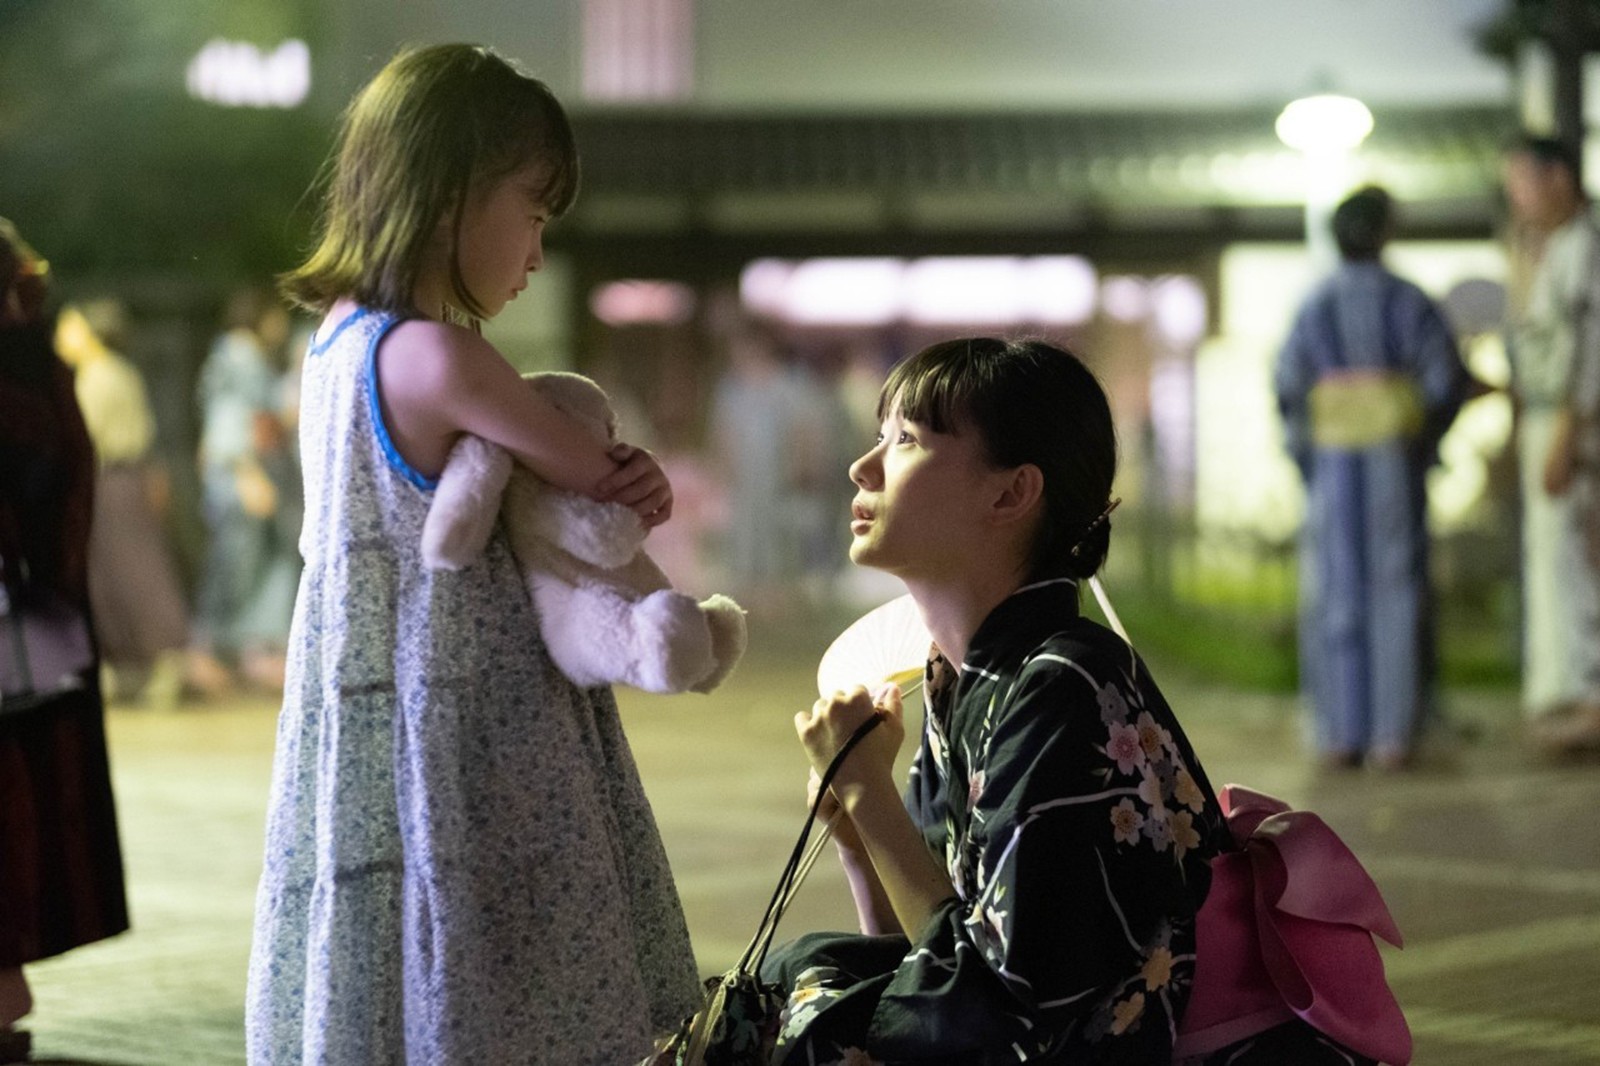 悲しい事件題材に「子どもを守る」希望の映画を　梅木佳子さん新作来夏公開